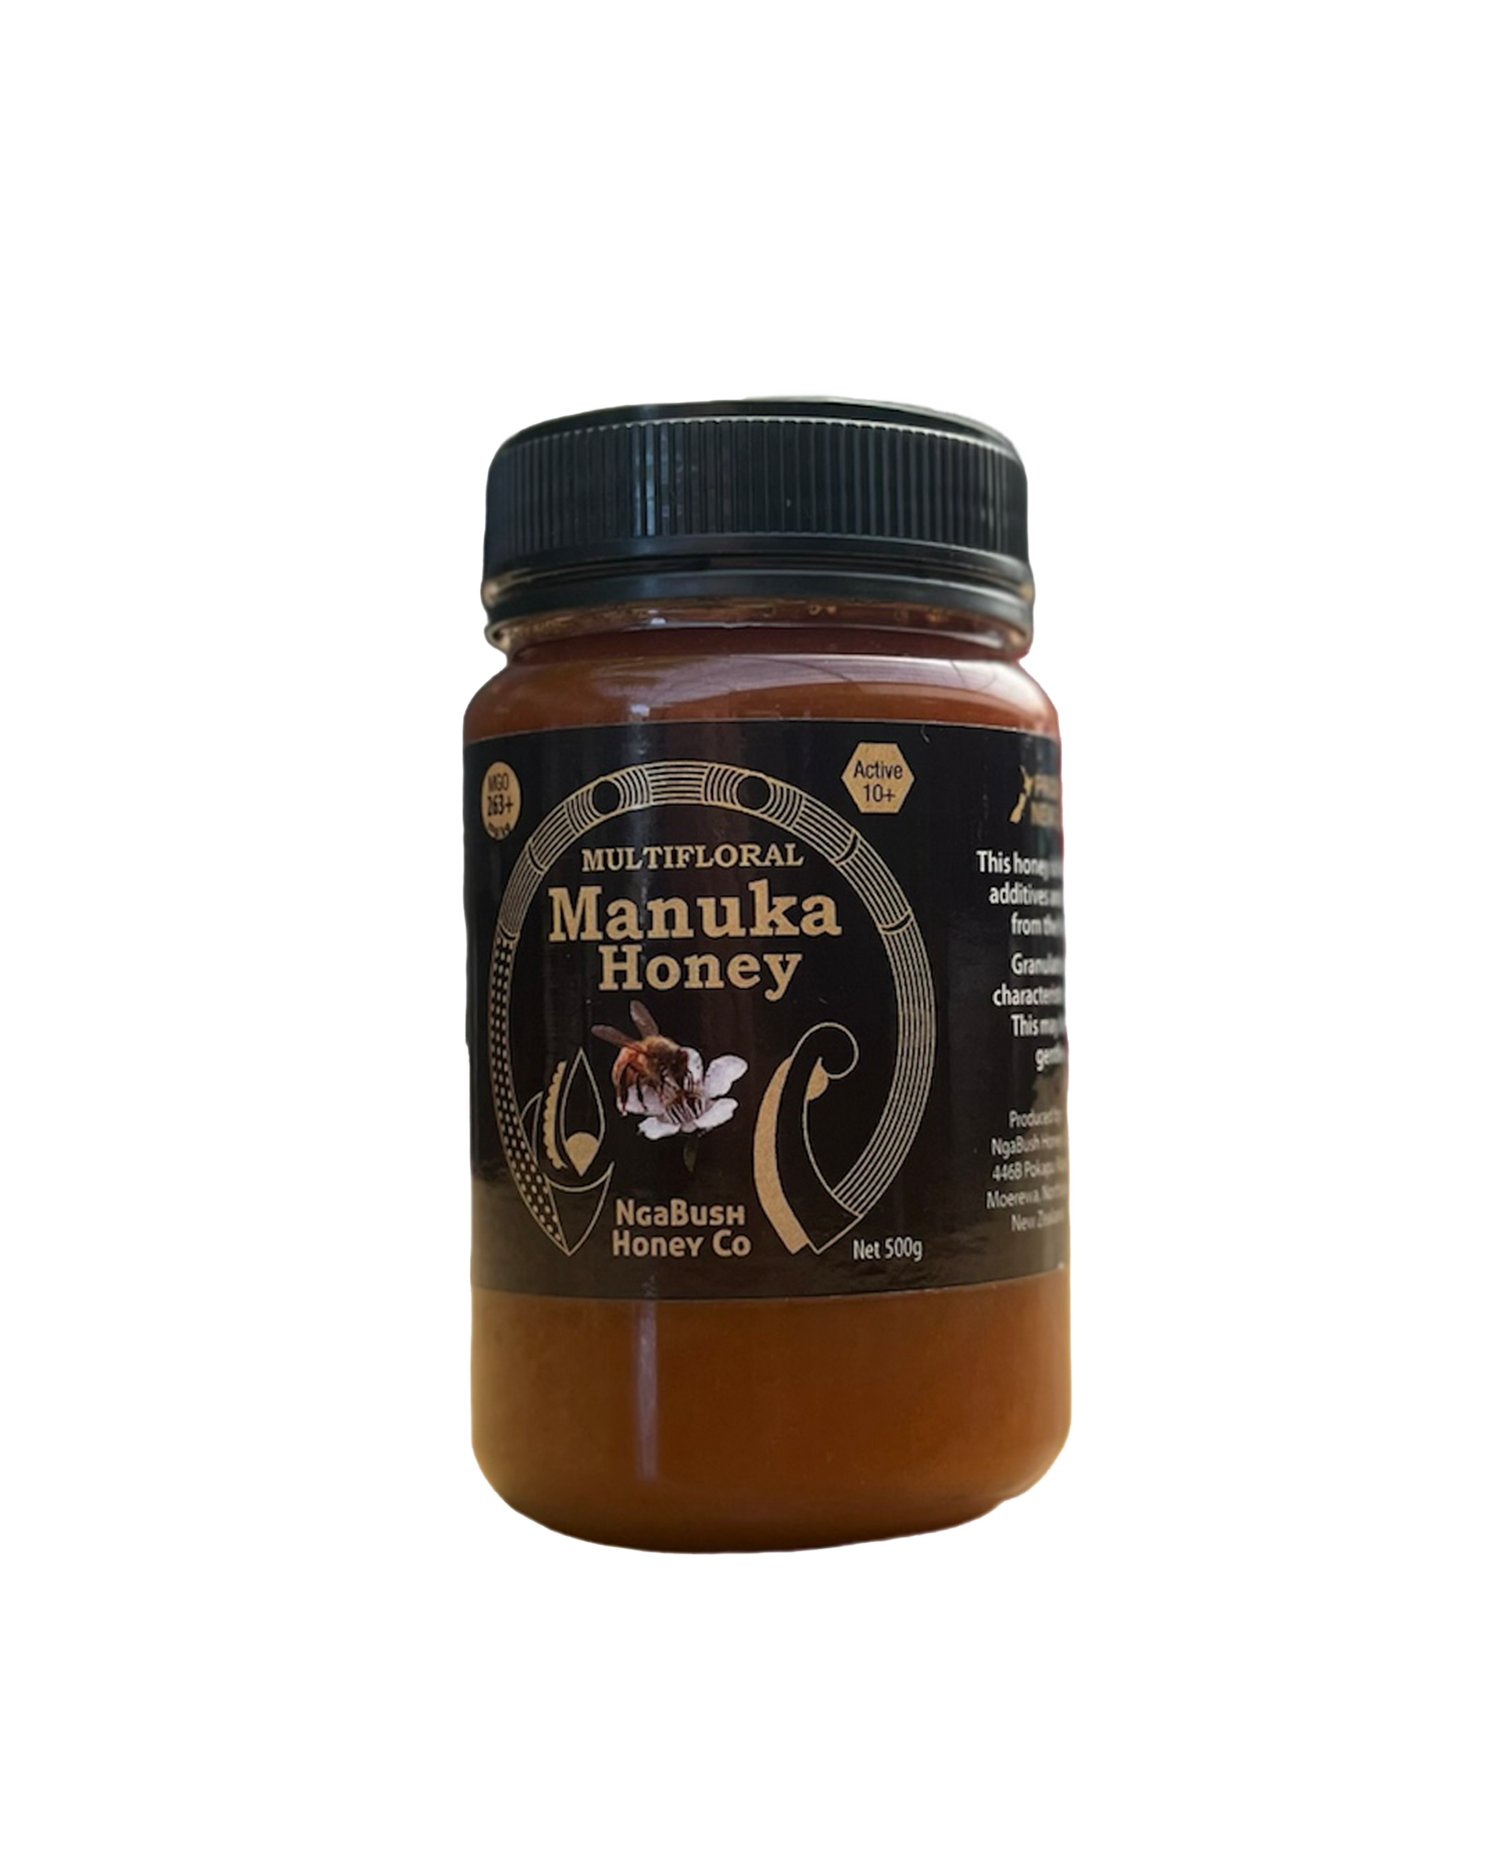 NgaBush Manuka Honey